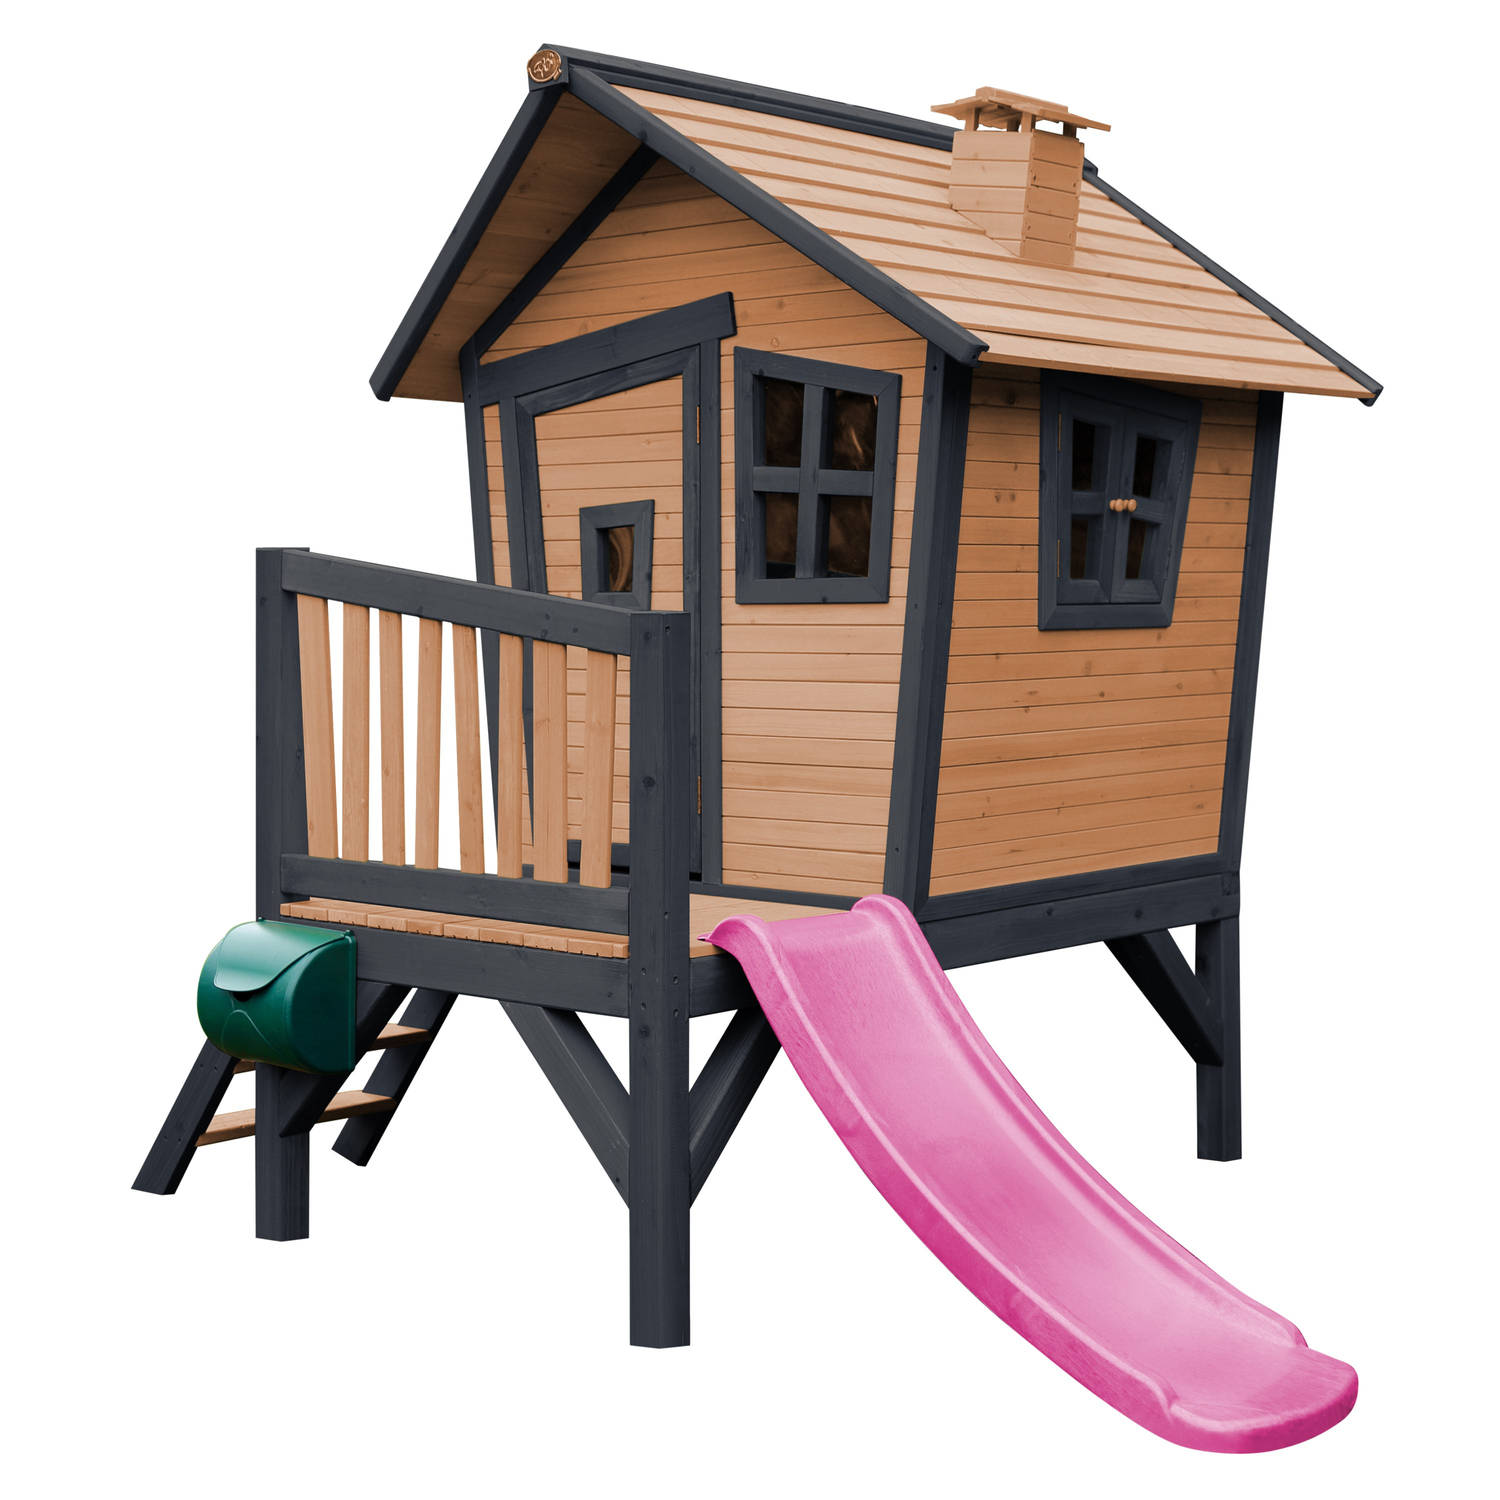 AXI Robin Speelhuis in Bruin/Antraciet - Met veranda en Paarse glijbaan - Speelhuisje op palen met veranda - FSC hout - Speeltoestel voor de tuin